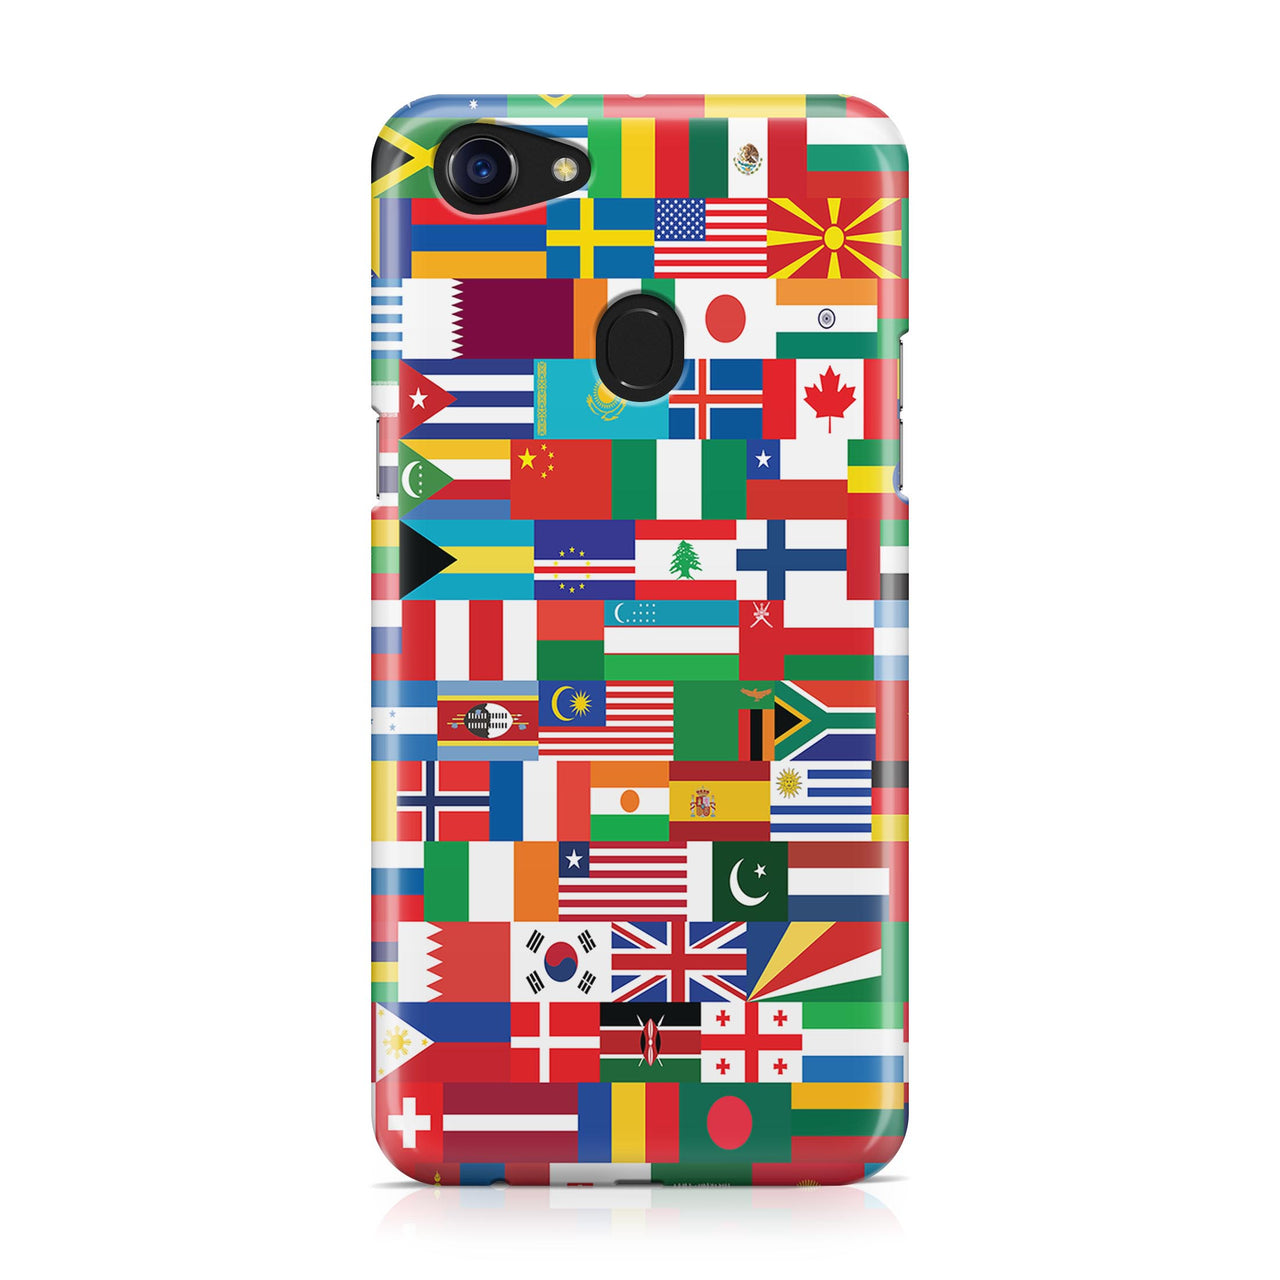 World Flags Designed Oppo Phone Cases